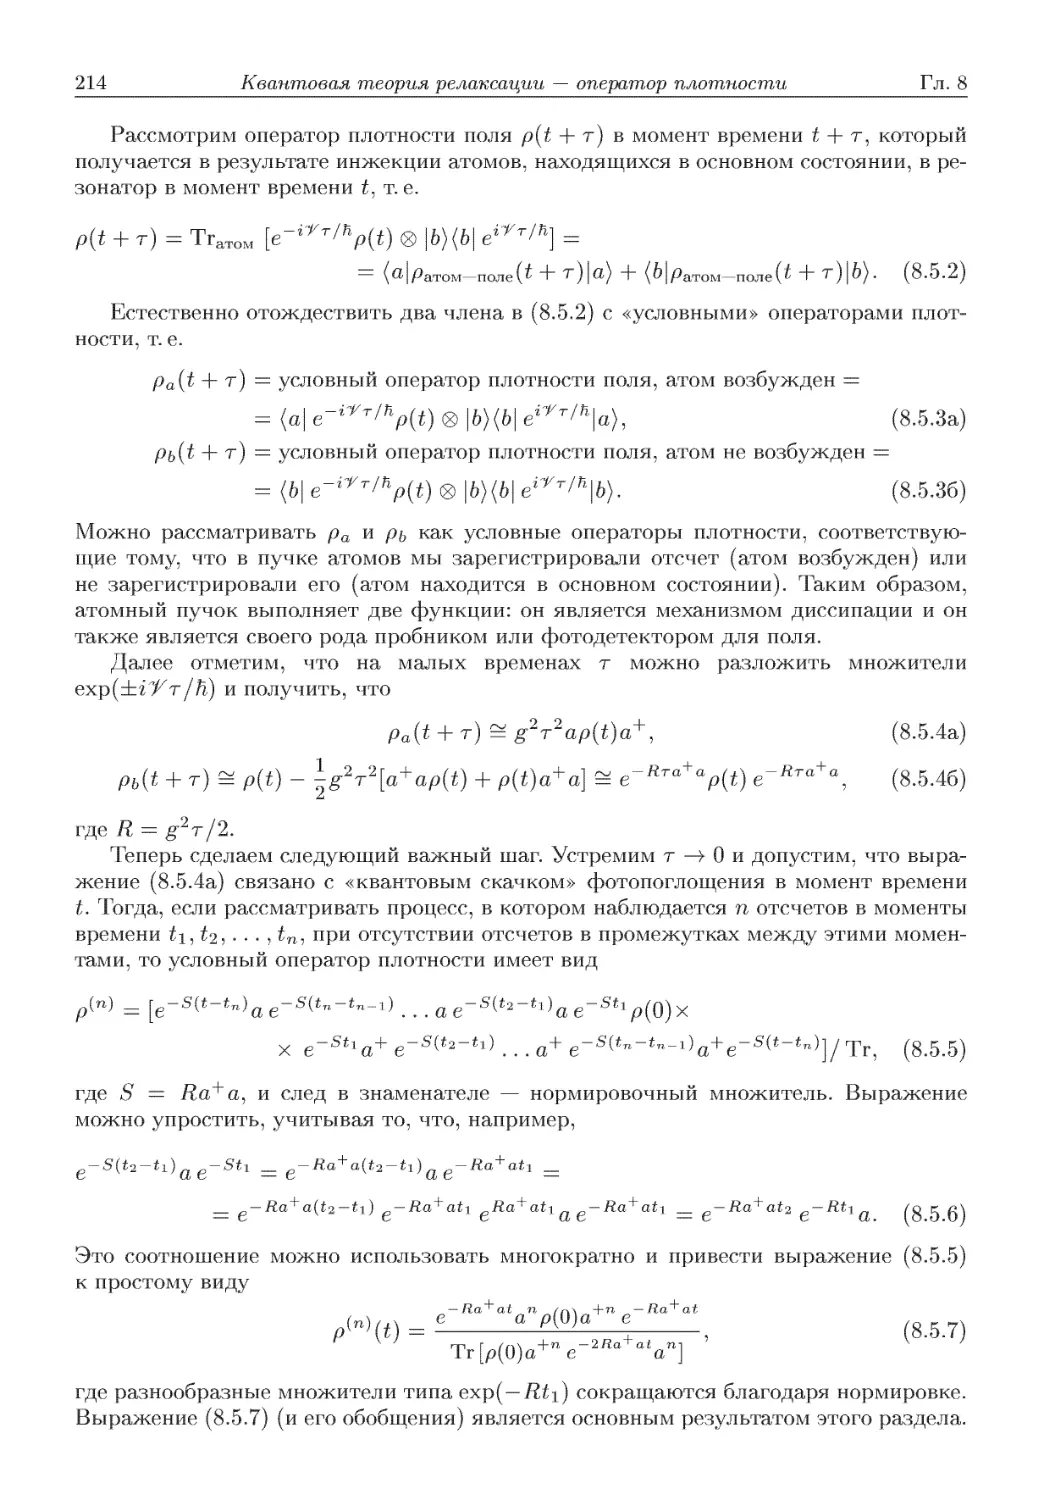 8.5.2. Метод Монте Карло для волновой функции при описании релаксации